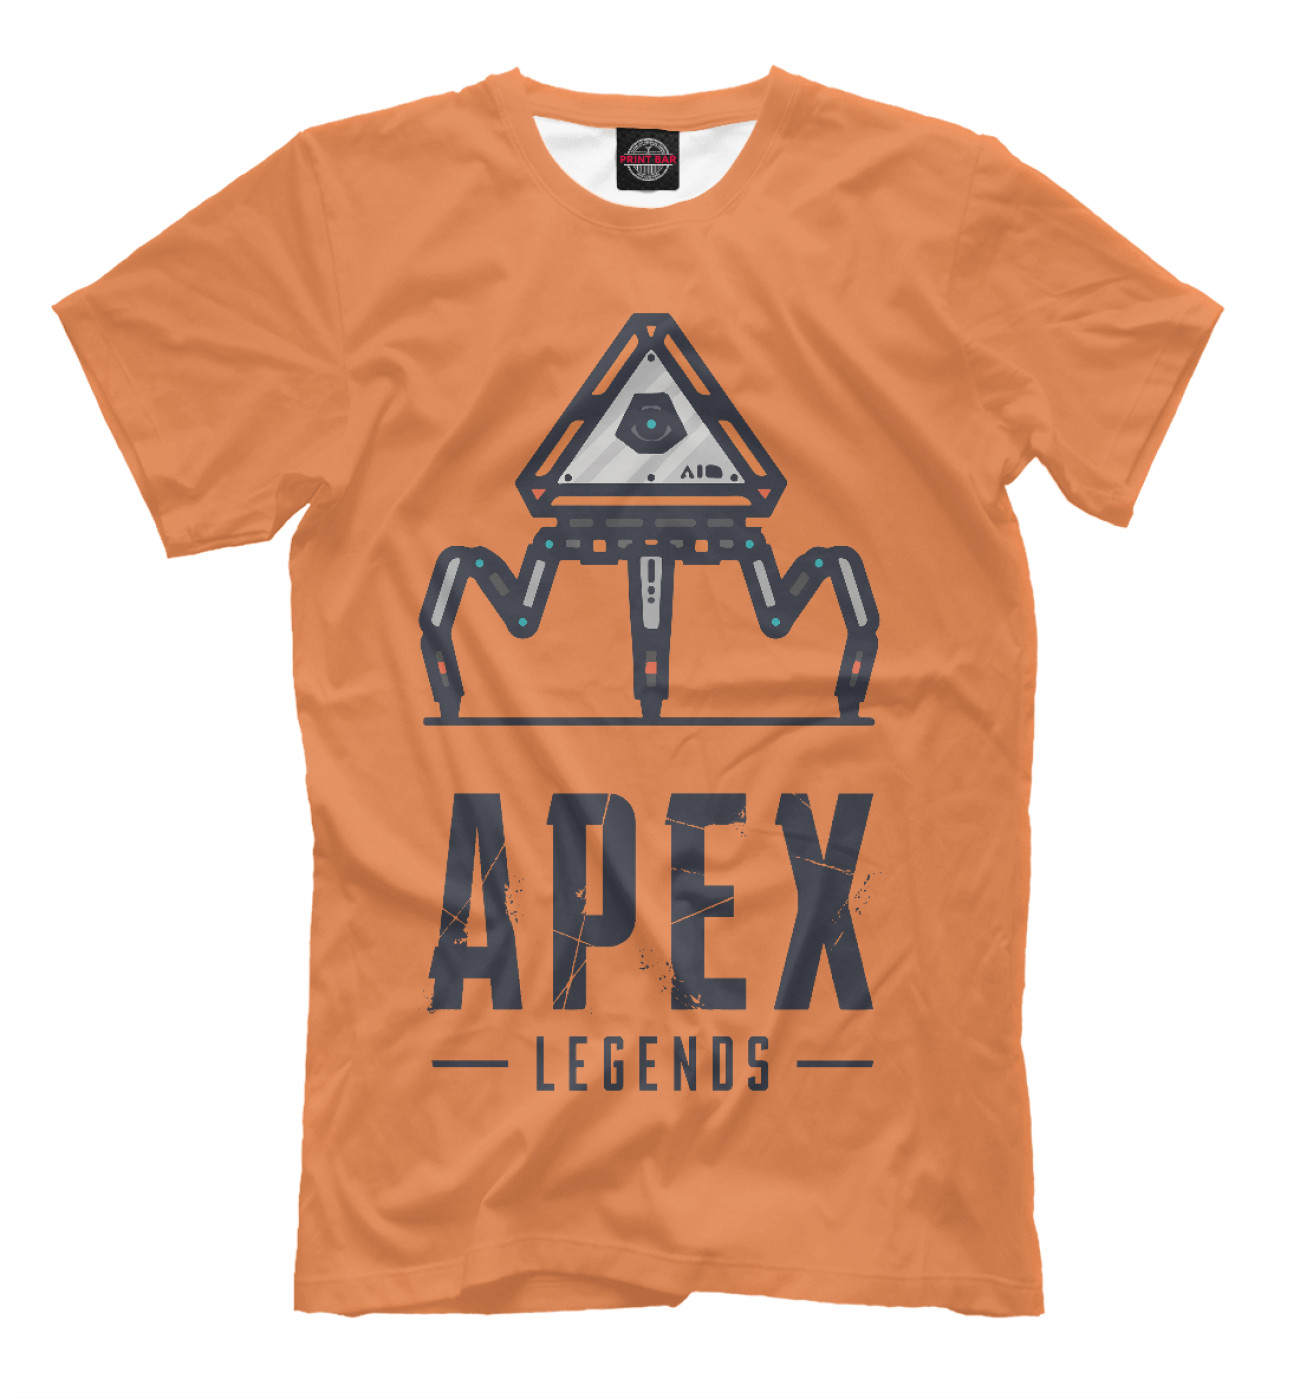 Мужская Футболка Apex legends loot drone, артикул: APX-426219-fut-2